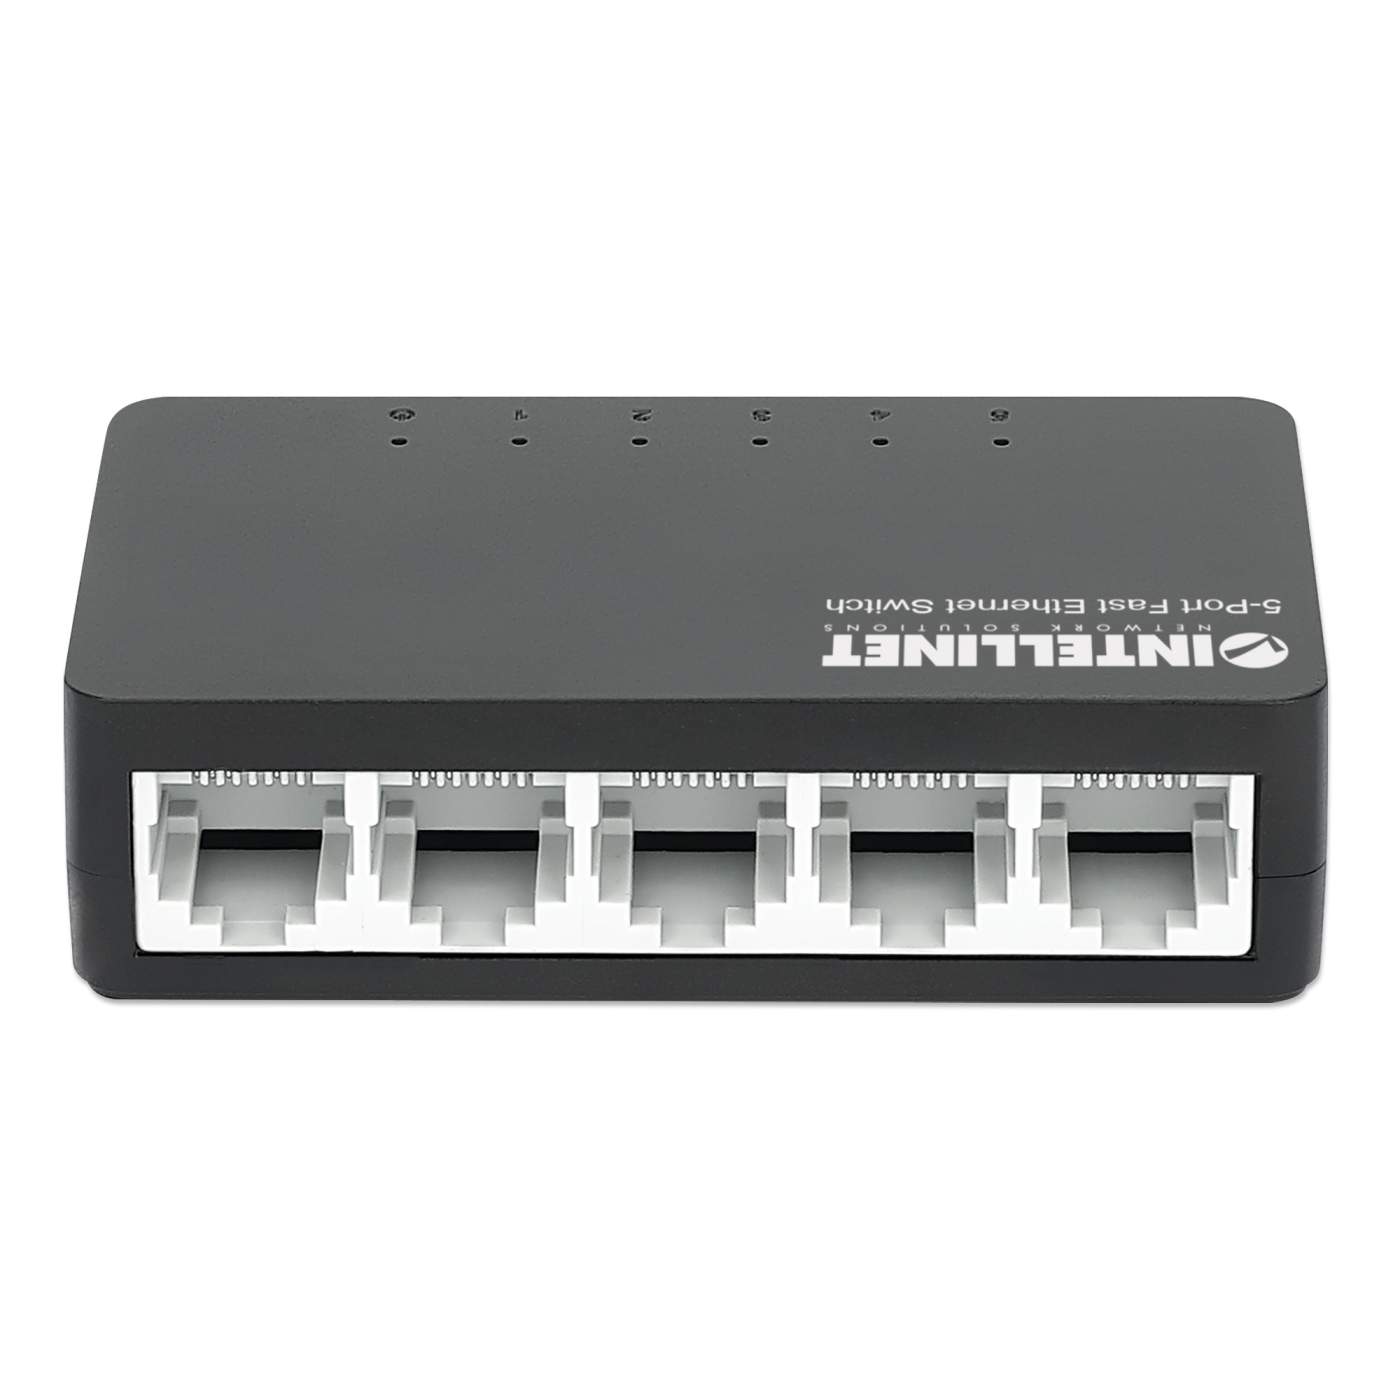 Network Switch Hub 5 Ports RJ45 Lan Ethernet 10/100 Mbps Mini Compact